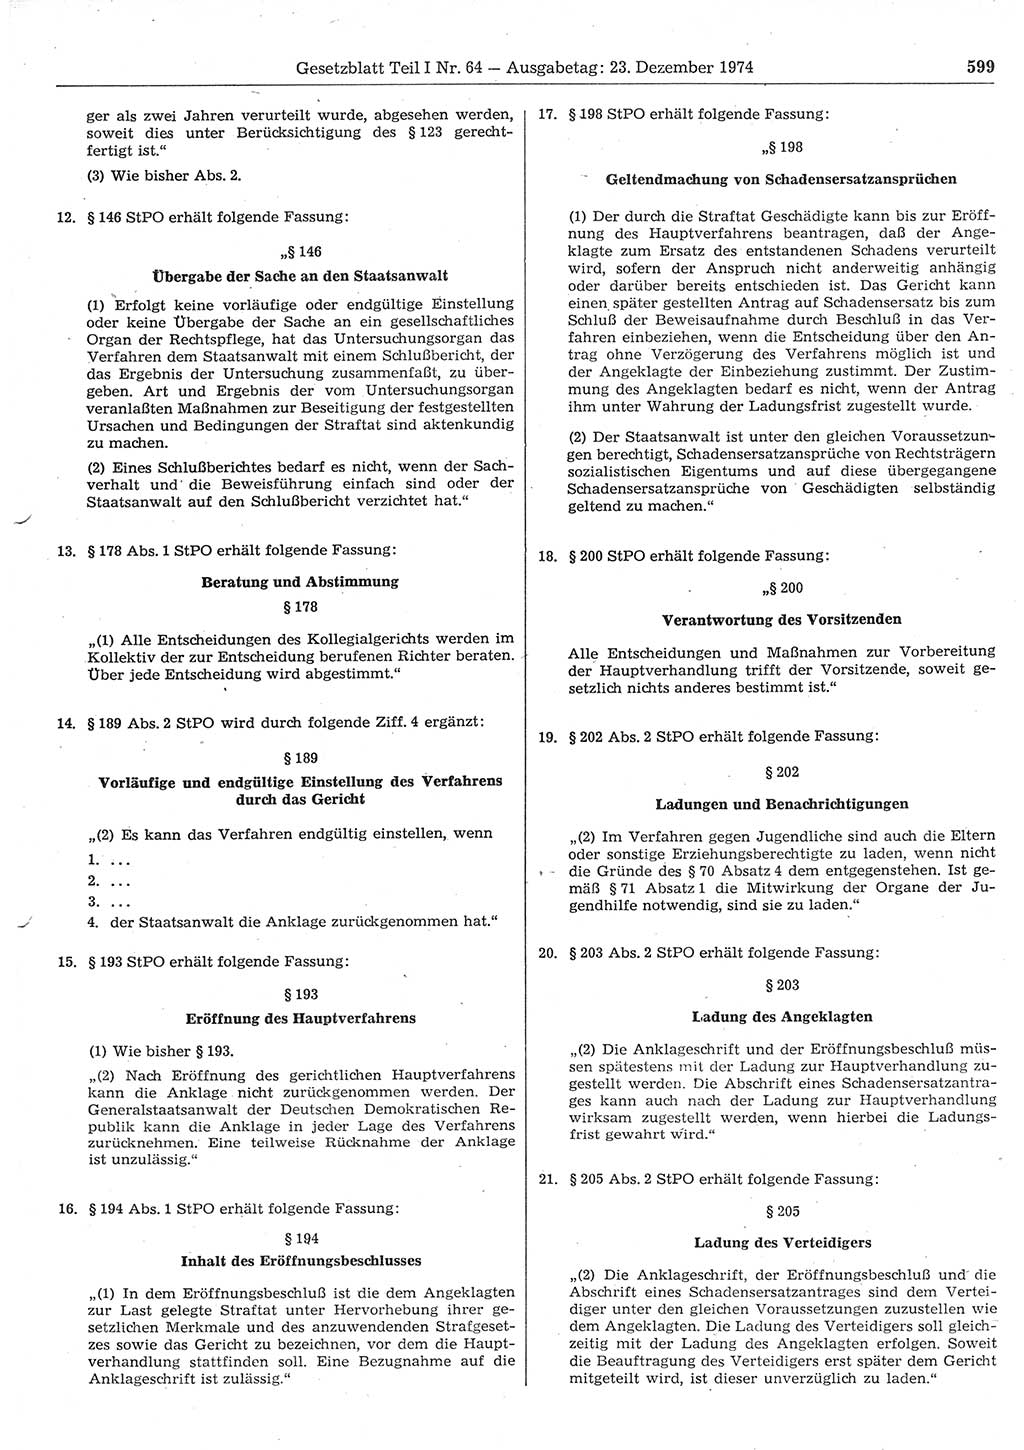 Gesetzblatt (GBl.) der Deutschen Demokratischen Republik (DDR) Teil Ⅰ 1974, Seite 599 (GBl. DDR Ⅰ 1974, S. 599)